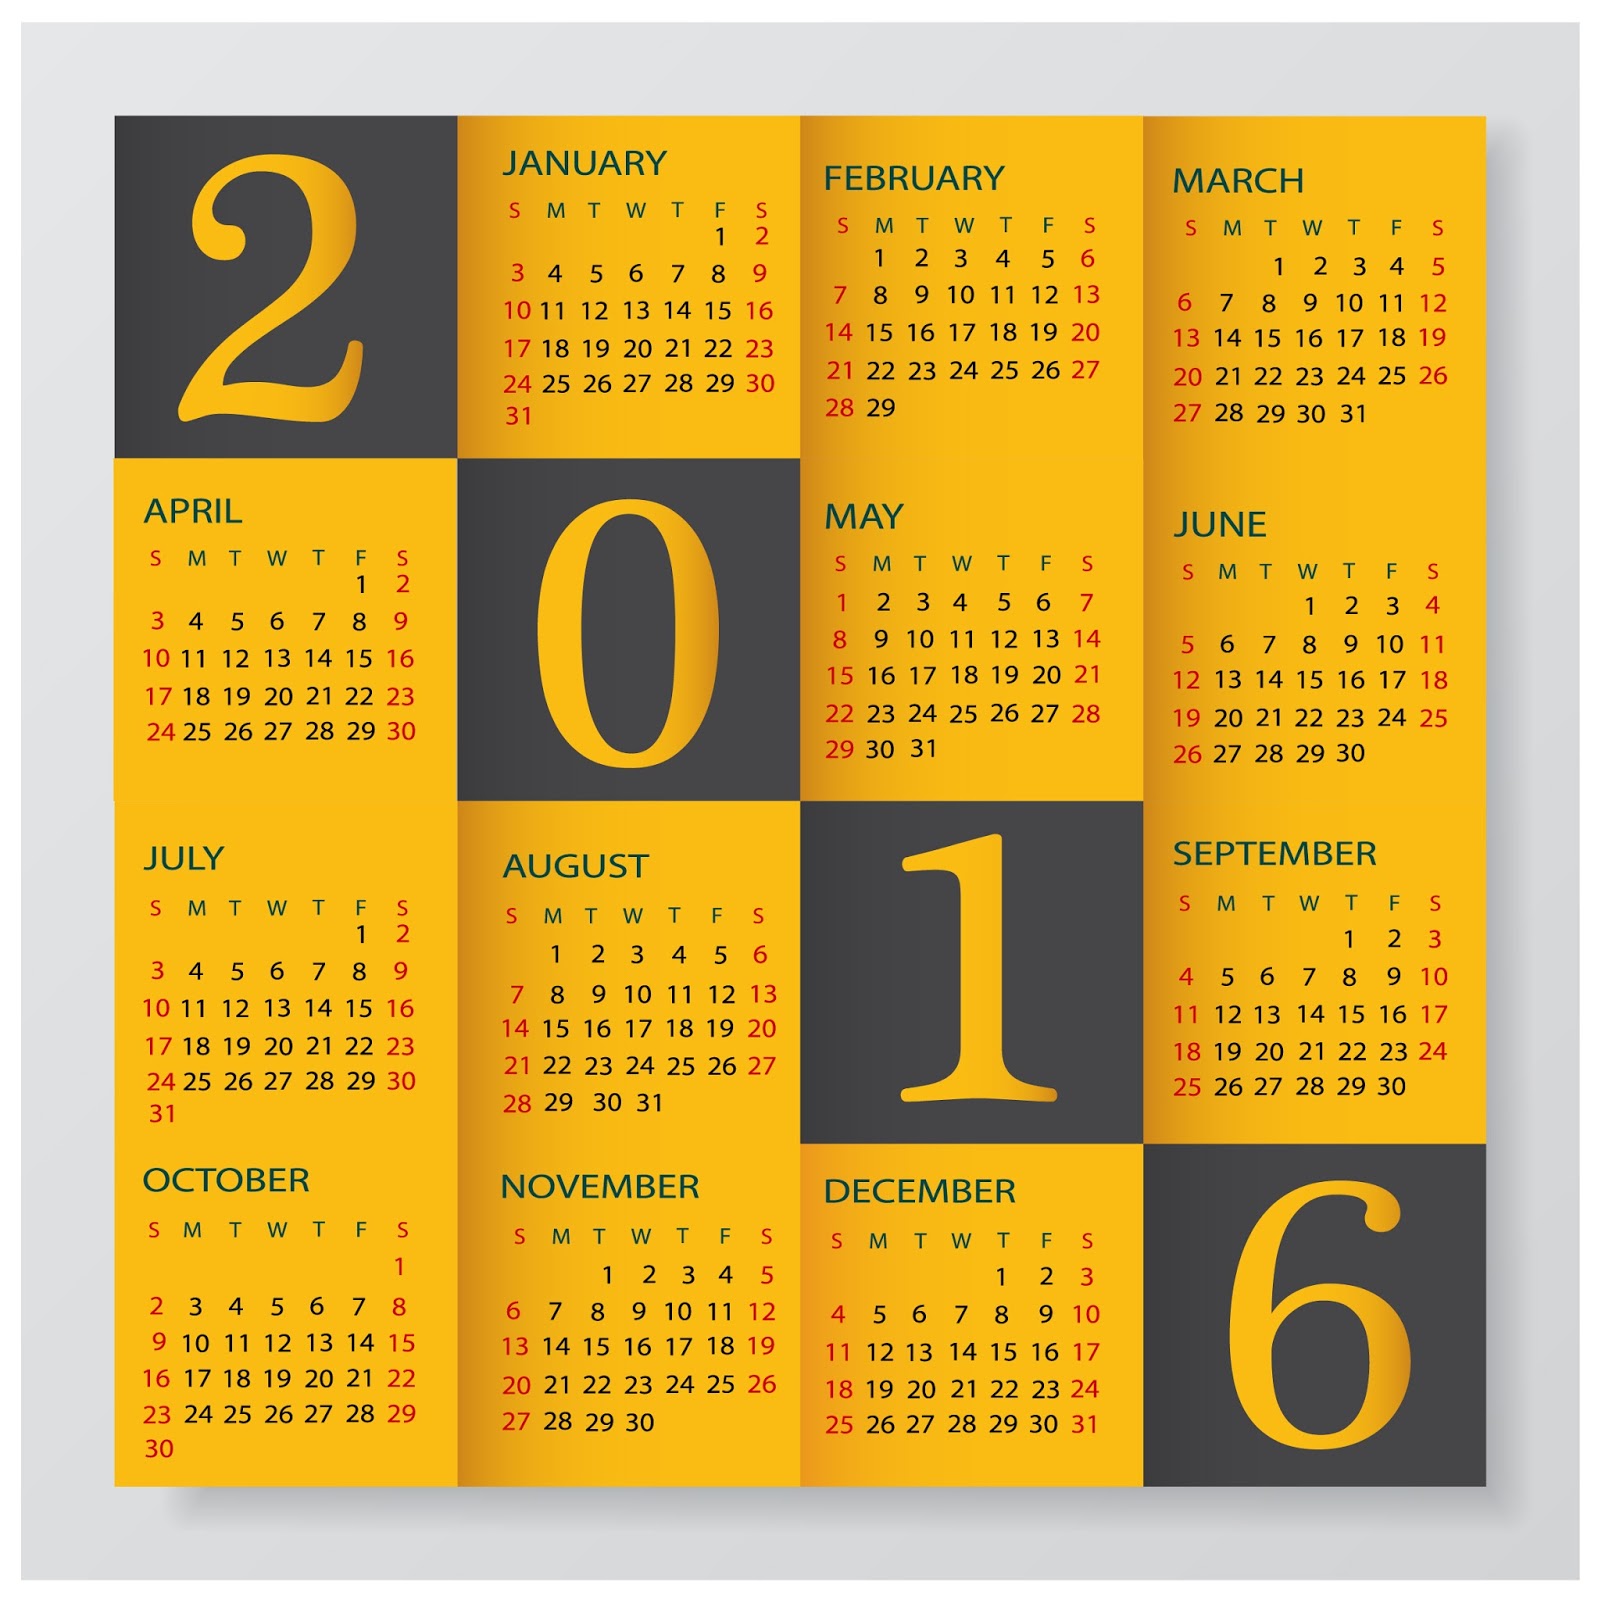 calendar 2016 design a calendar for 2016 calendar 2016 printable the 2016 calendar year the calendar for 2016 the 2016 calendar year non monthly calendar 2016 4 month